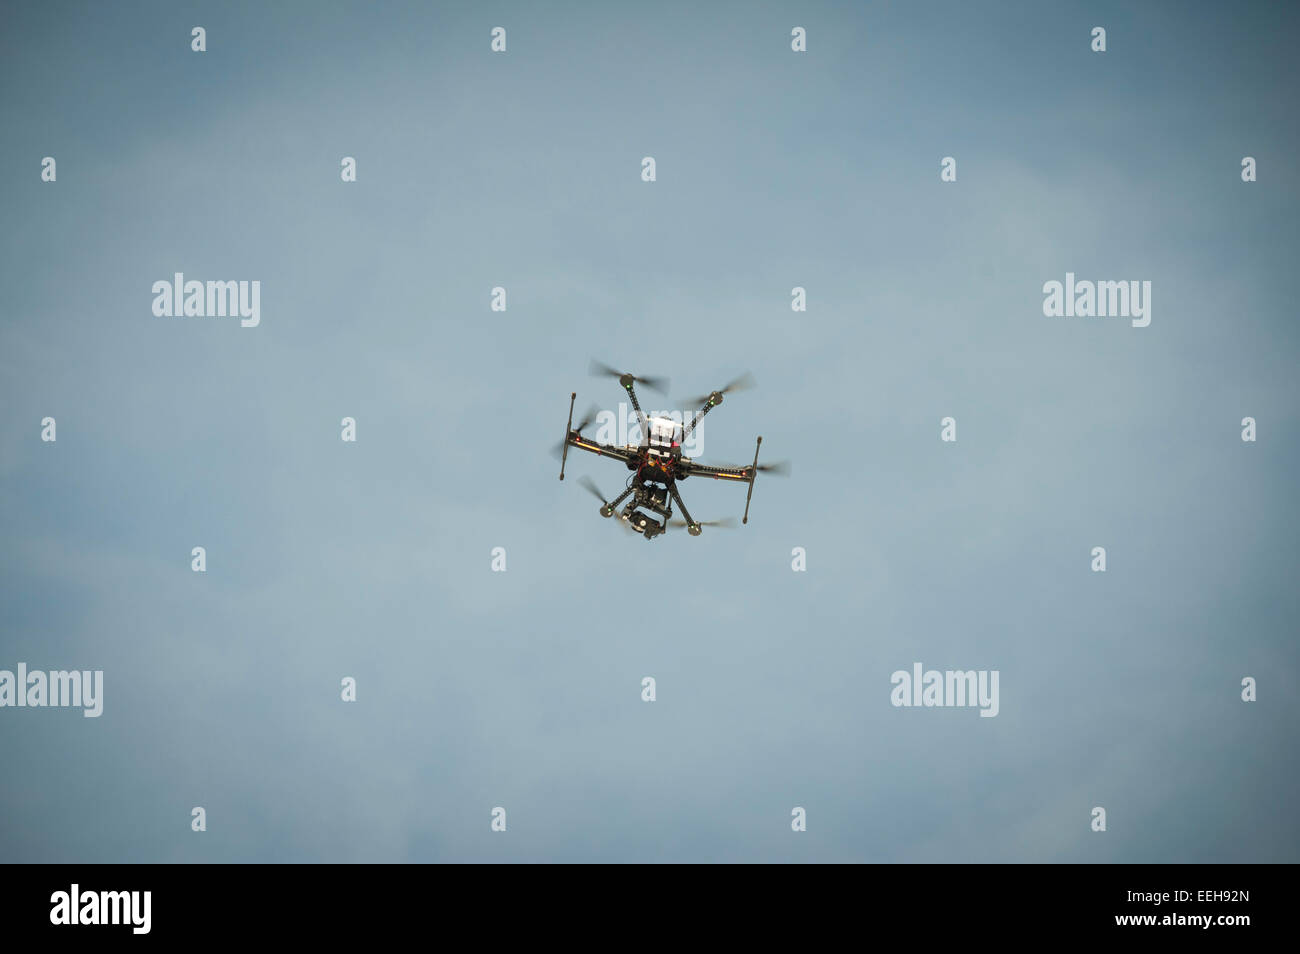 Civil un vehículo aéreo no tripulado (UAV) / multicopter drone utilizados para tareas de vigilancia aérea está volando en el aire Foto de stock